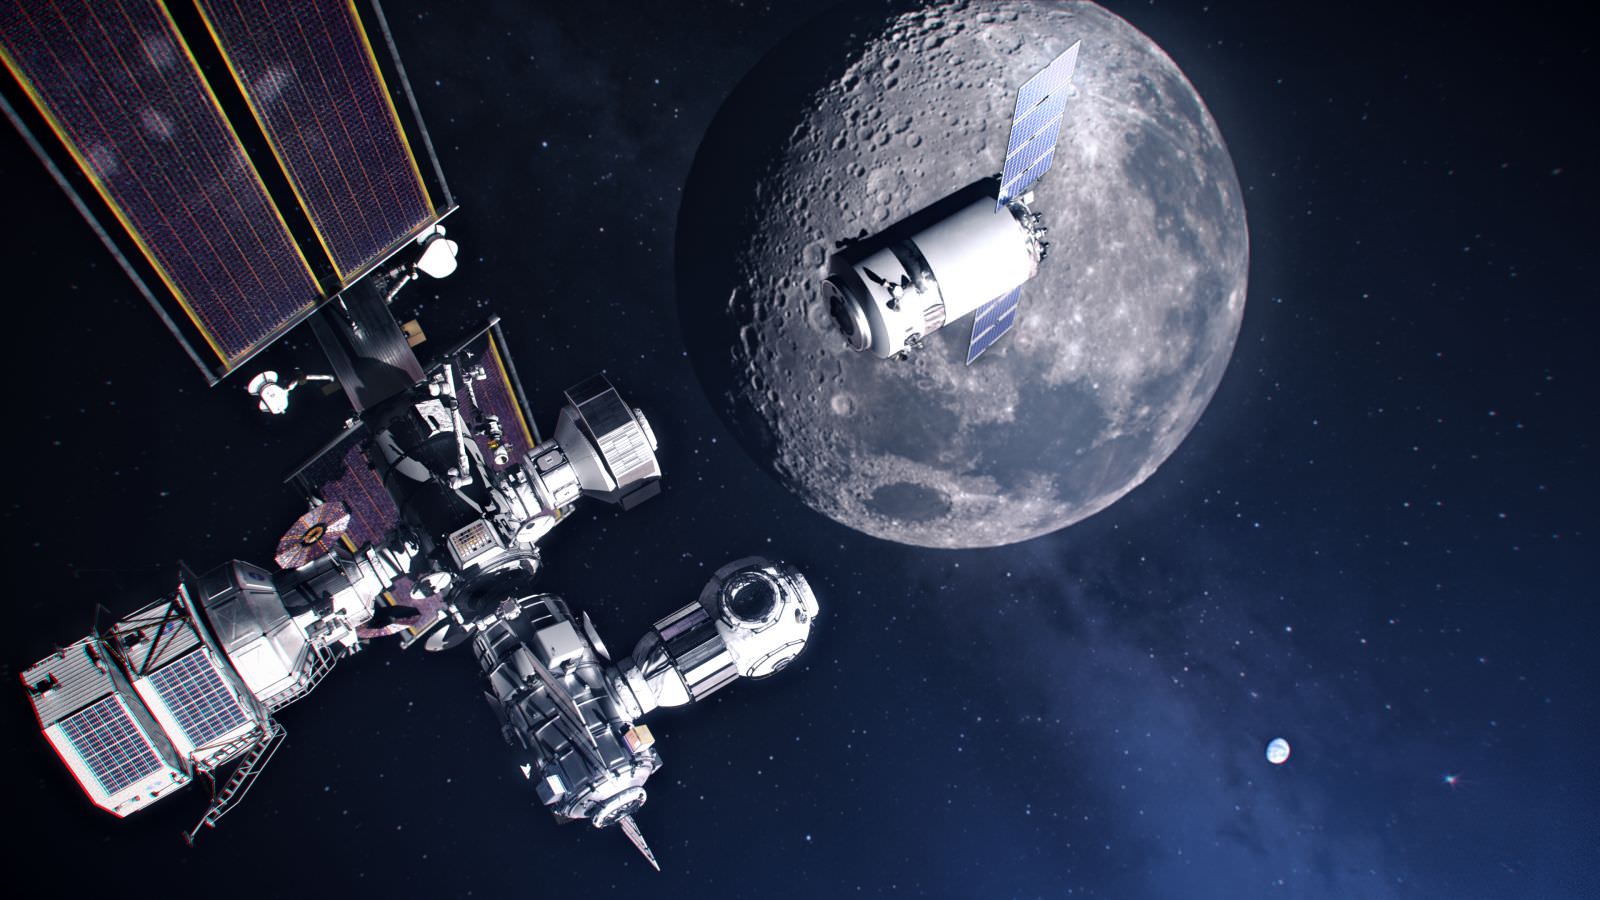 فضاپیمای دراگون ایکس ال در نزدیک شدن به ایستگاه قمری